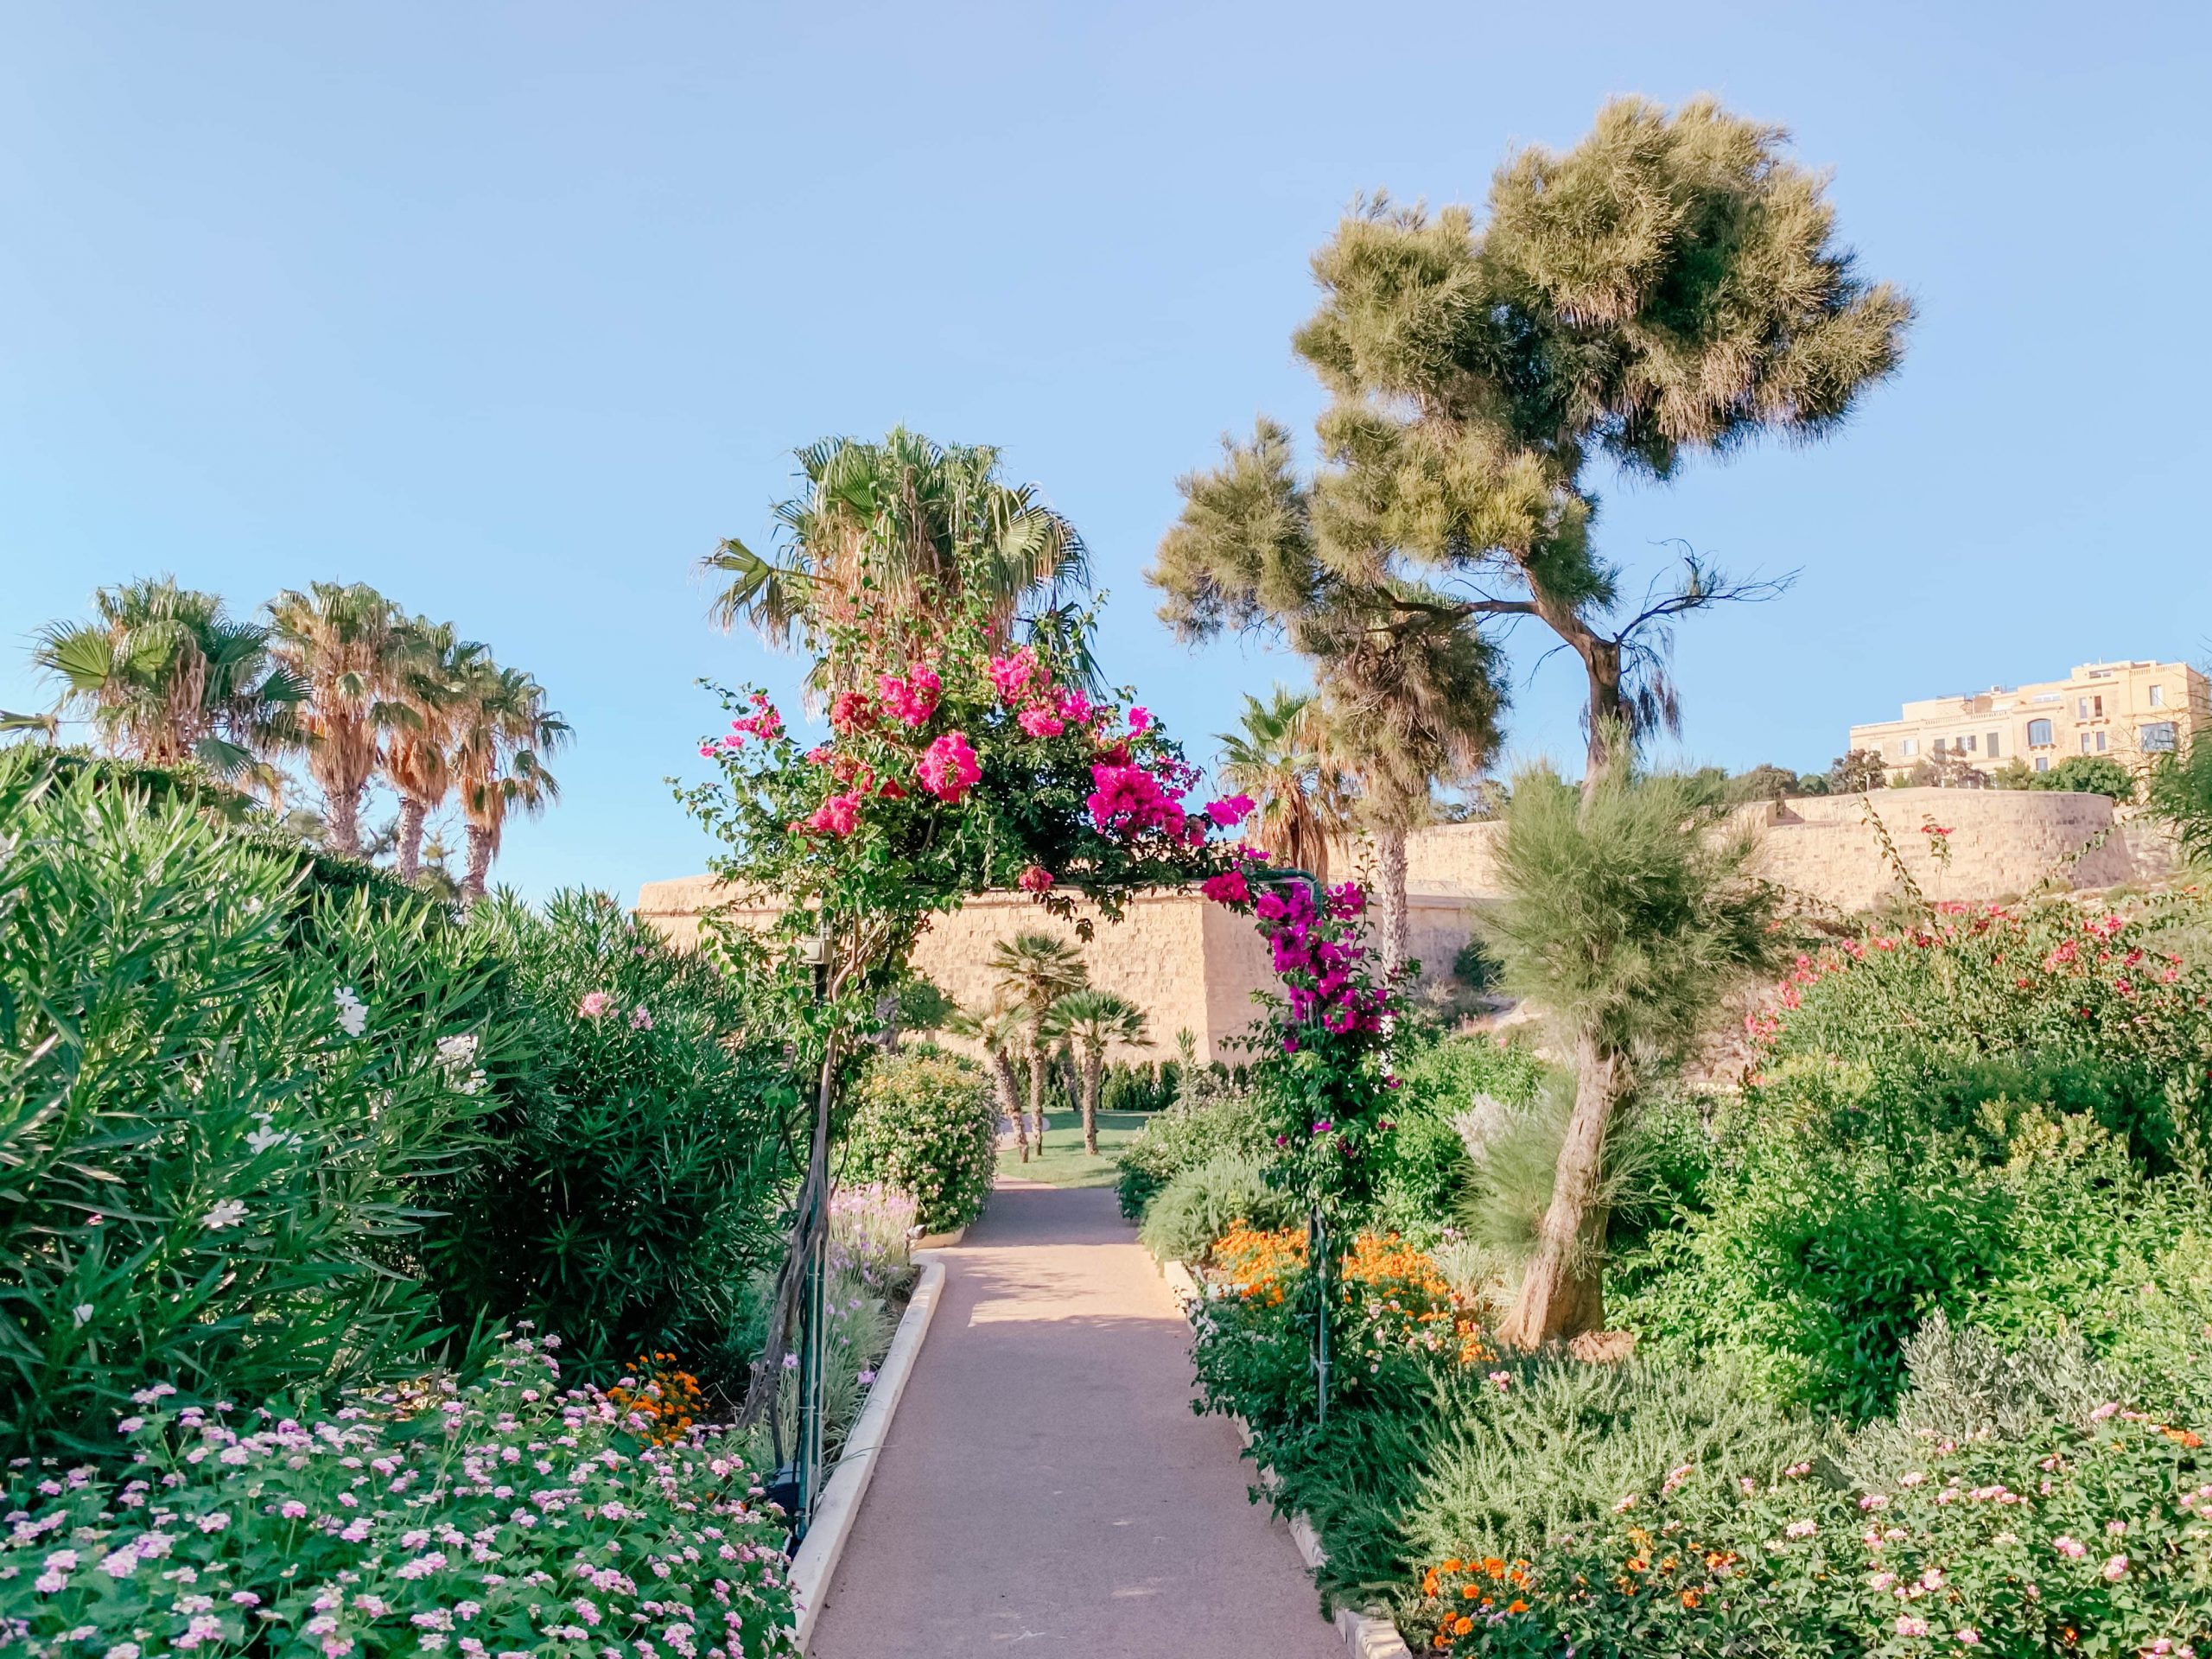 The Phoenicia Malta Gardens